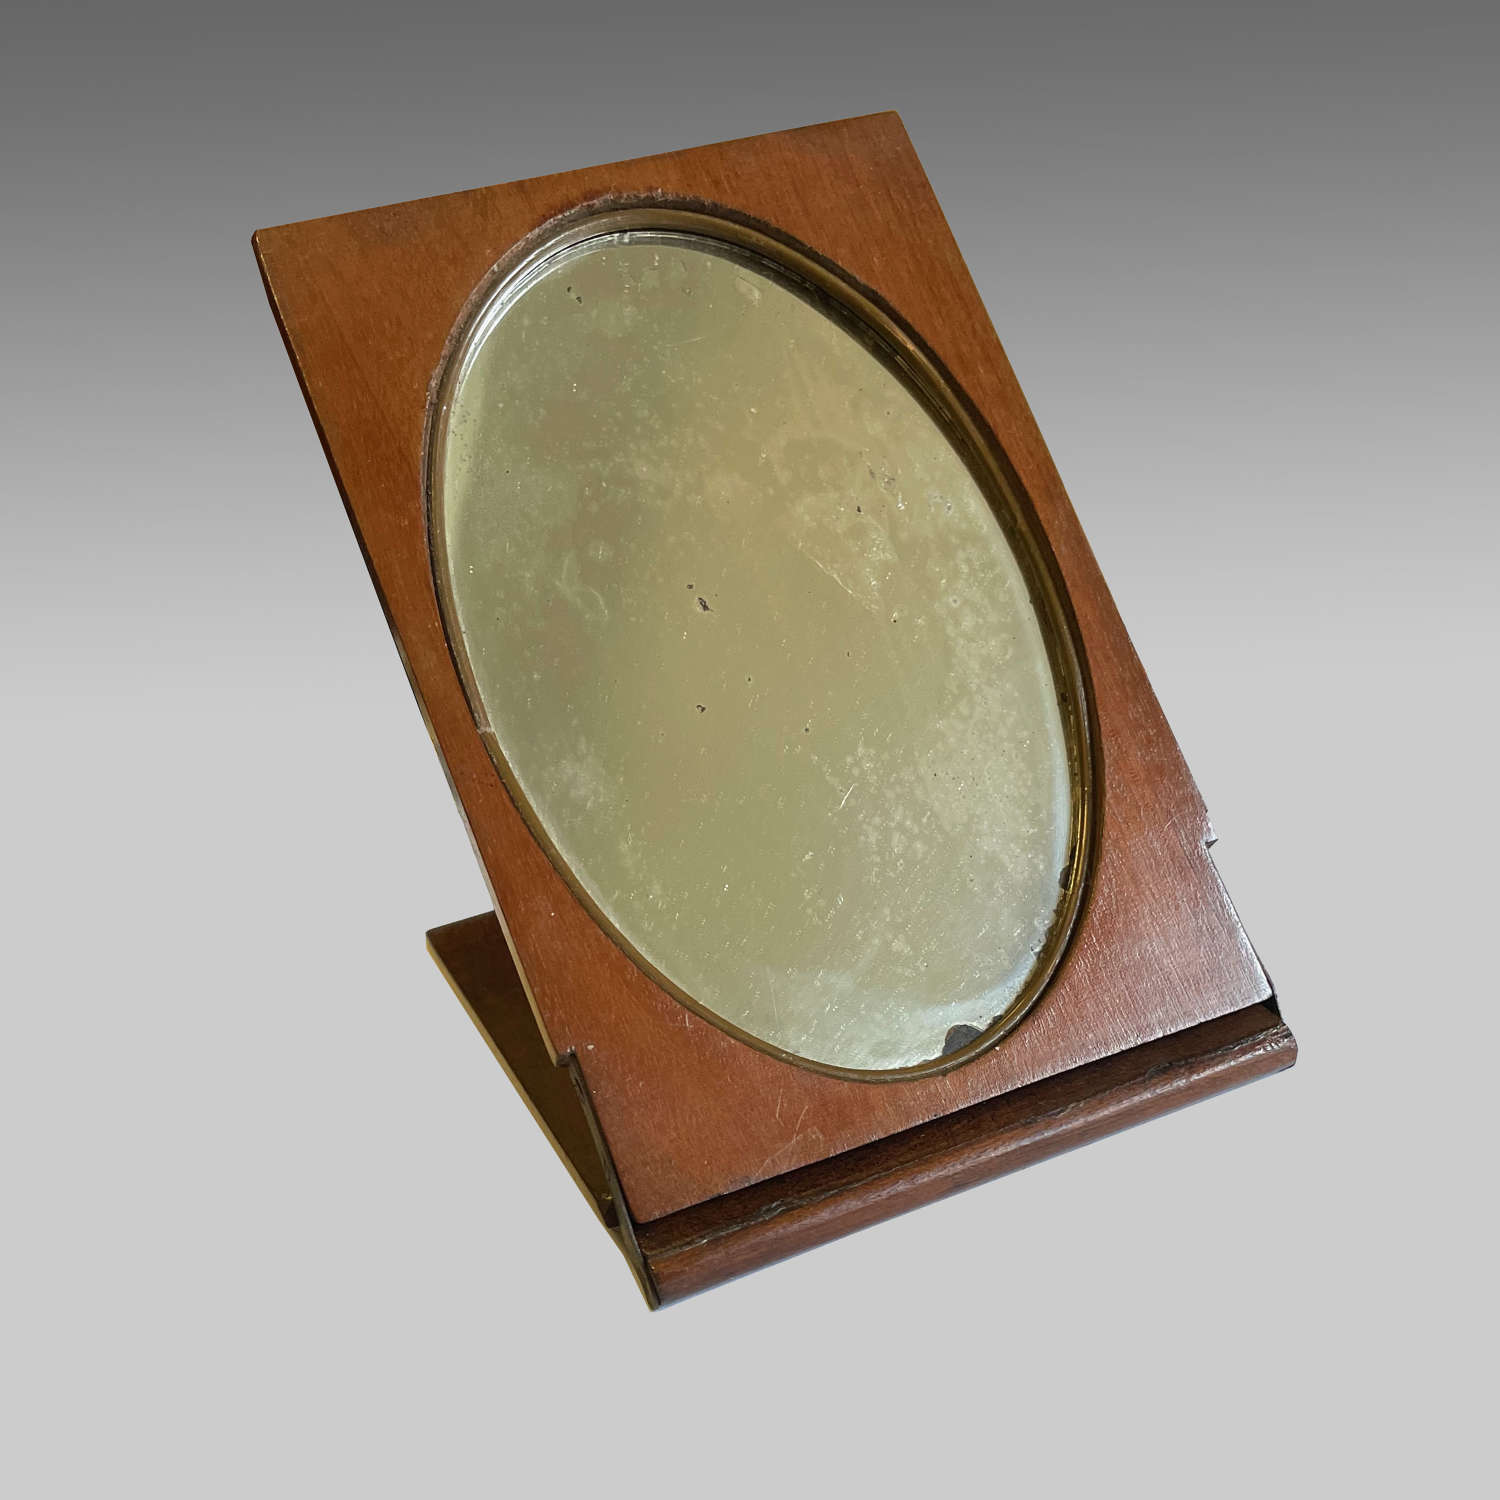 19th century officer’s walnut cased shaving mirror